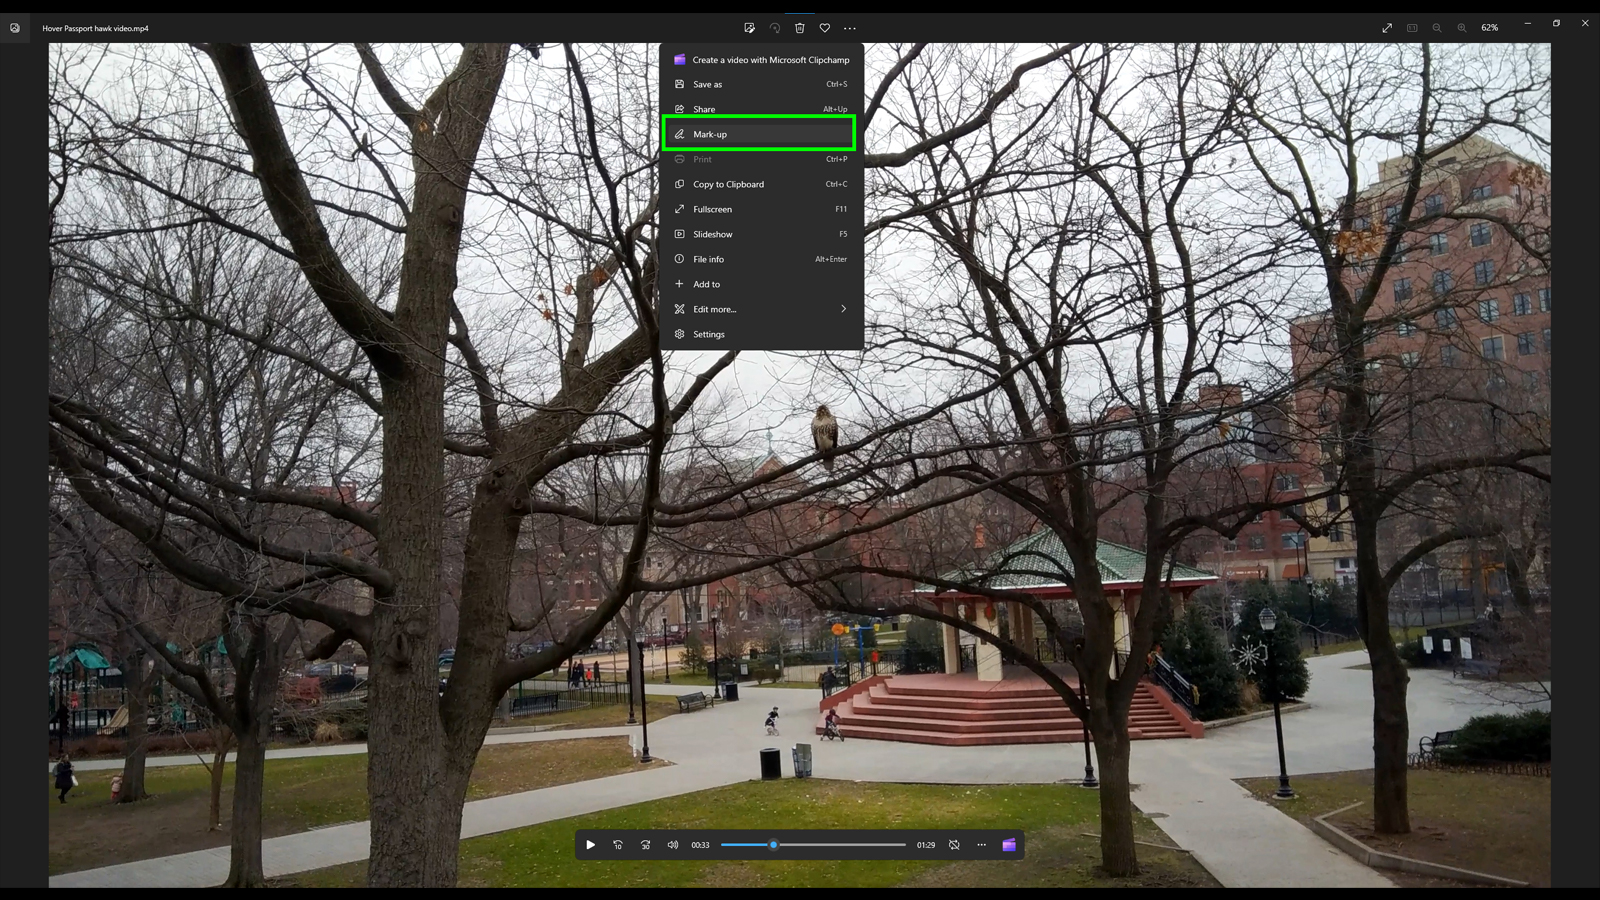 Rediger videoer i Windows Photos-skærmbillede med mulighed for fremhævelse